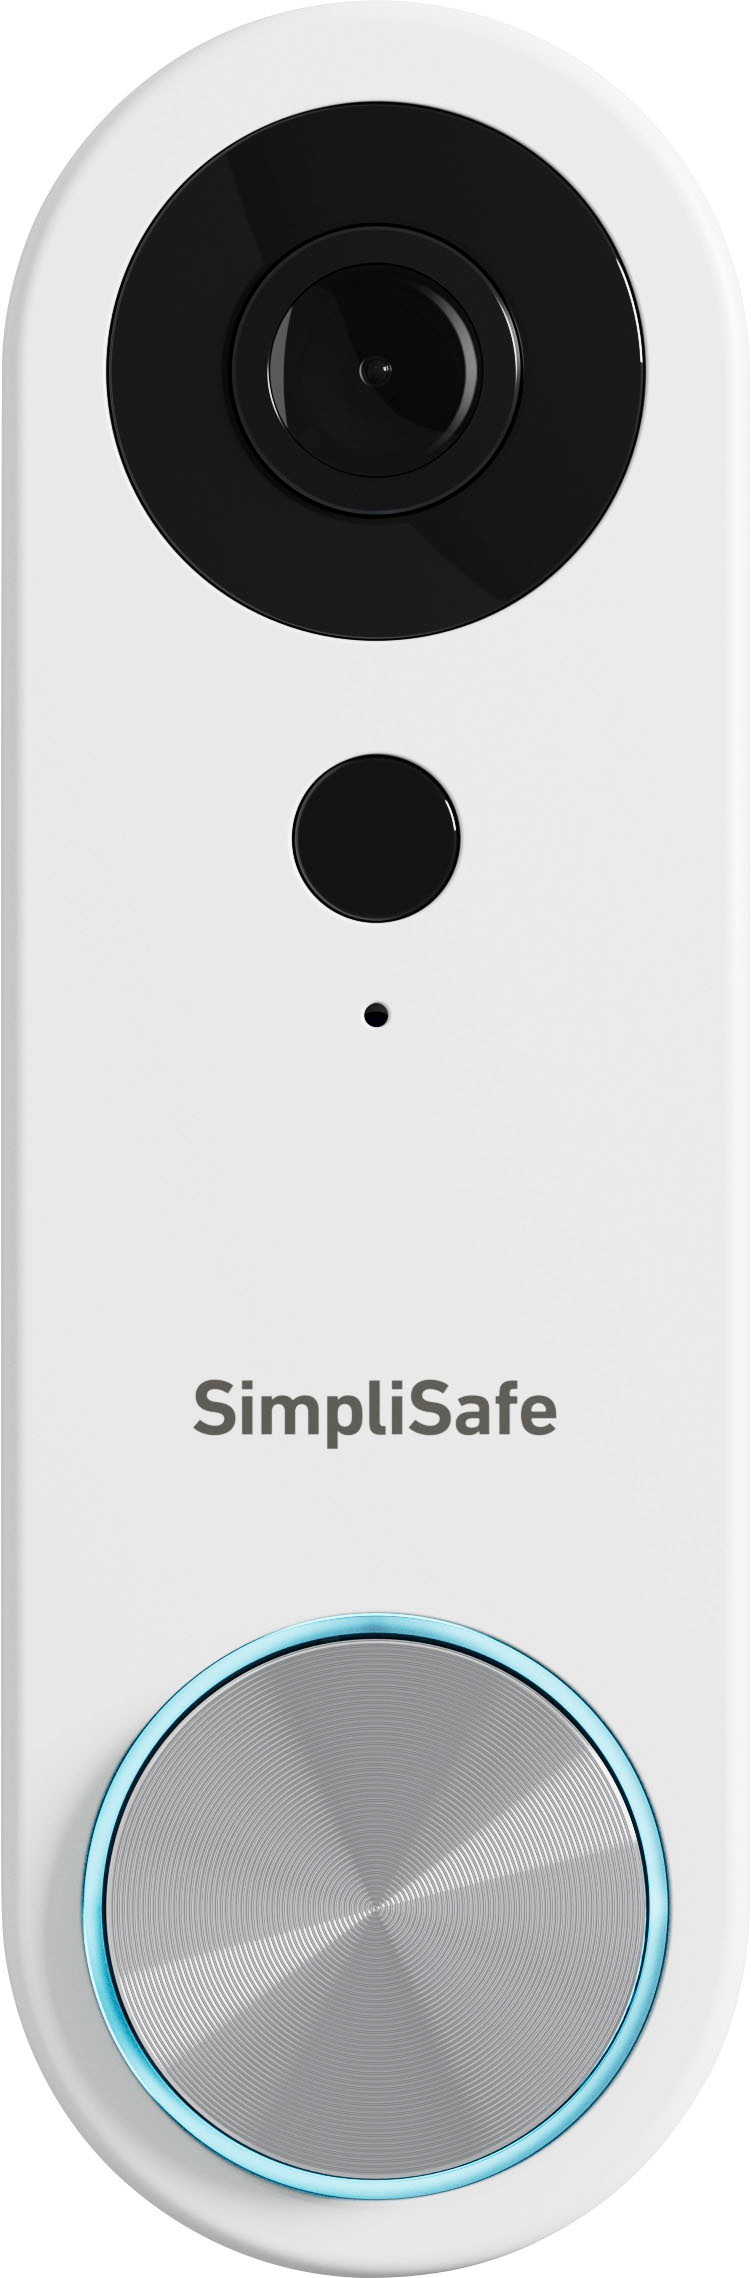 SimpliSafe Video Doorbell Pro Wired White SS3-DOORBELL - Best Buy